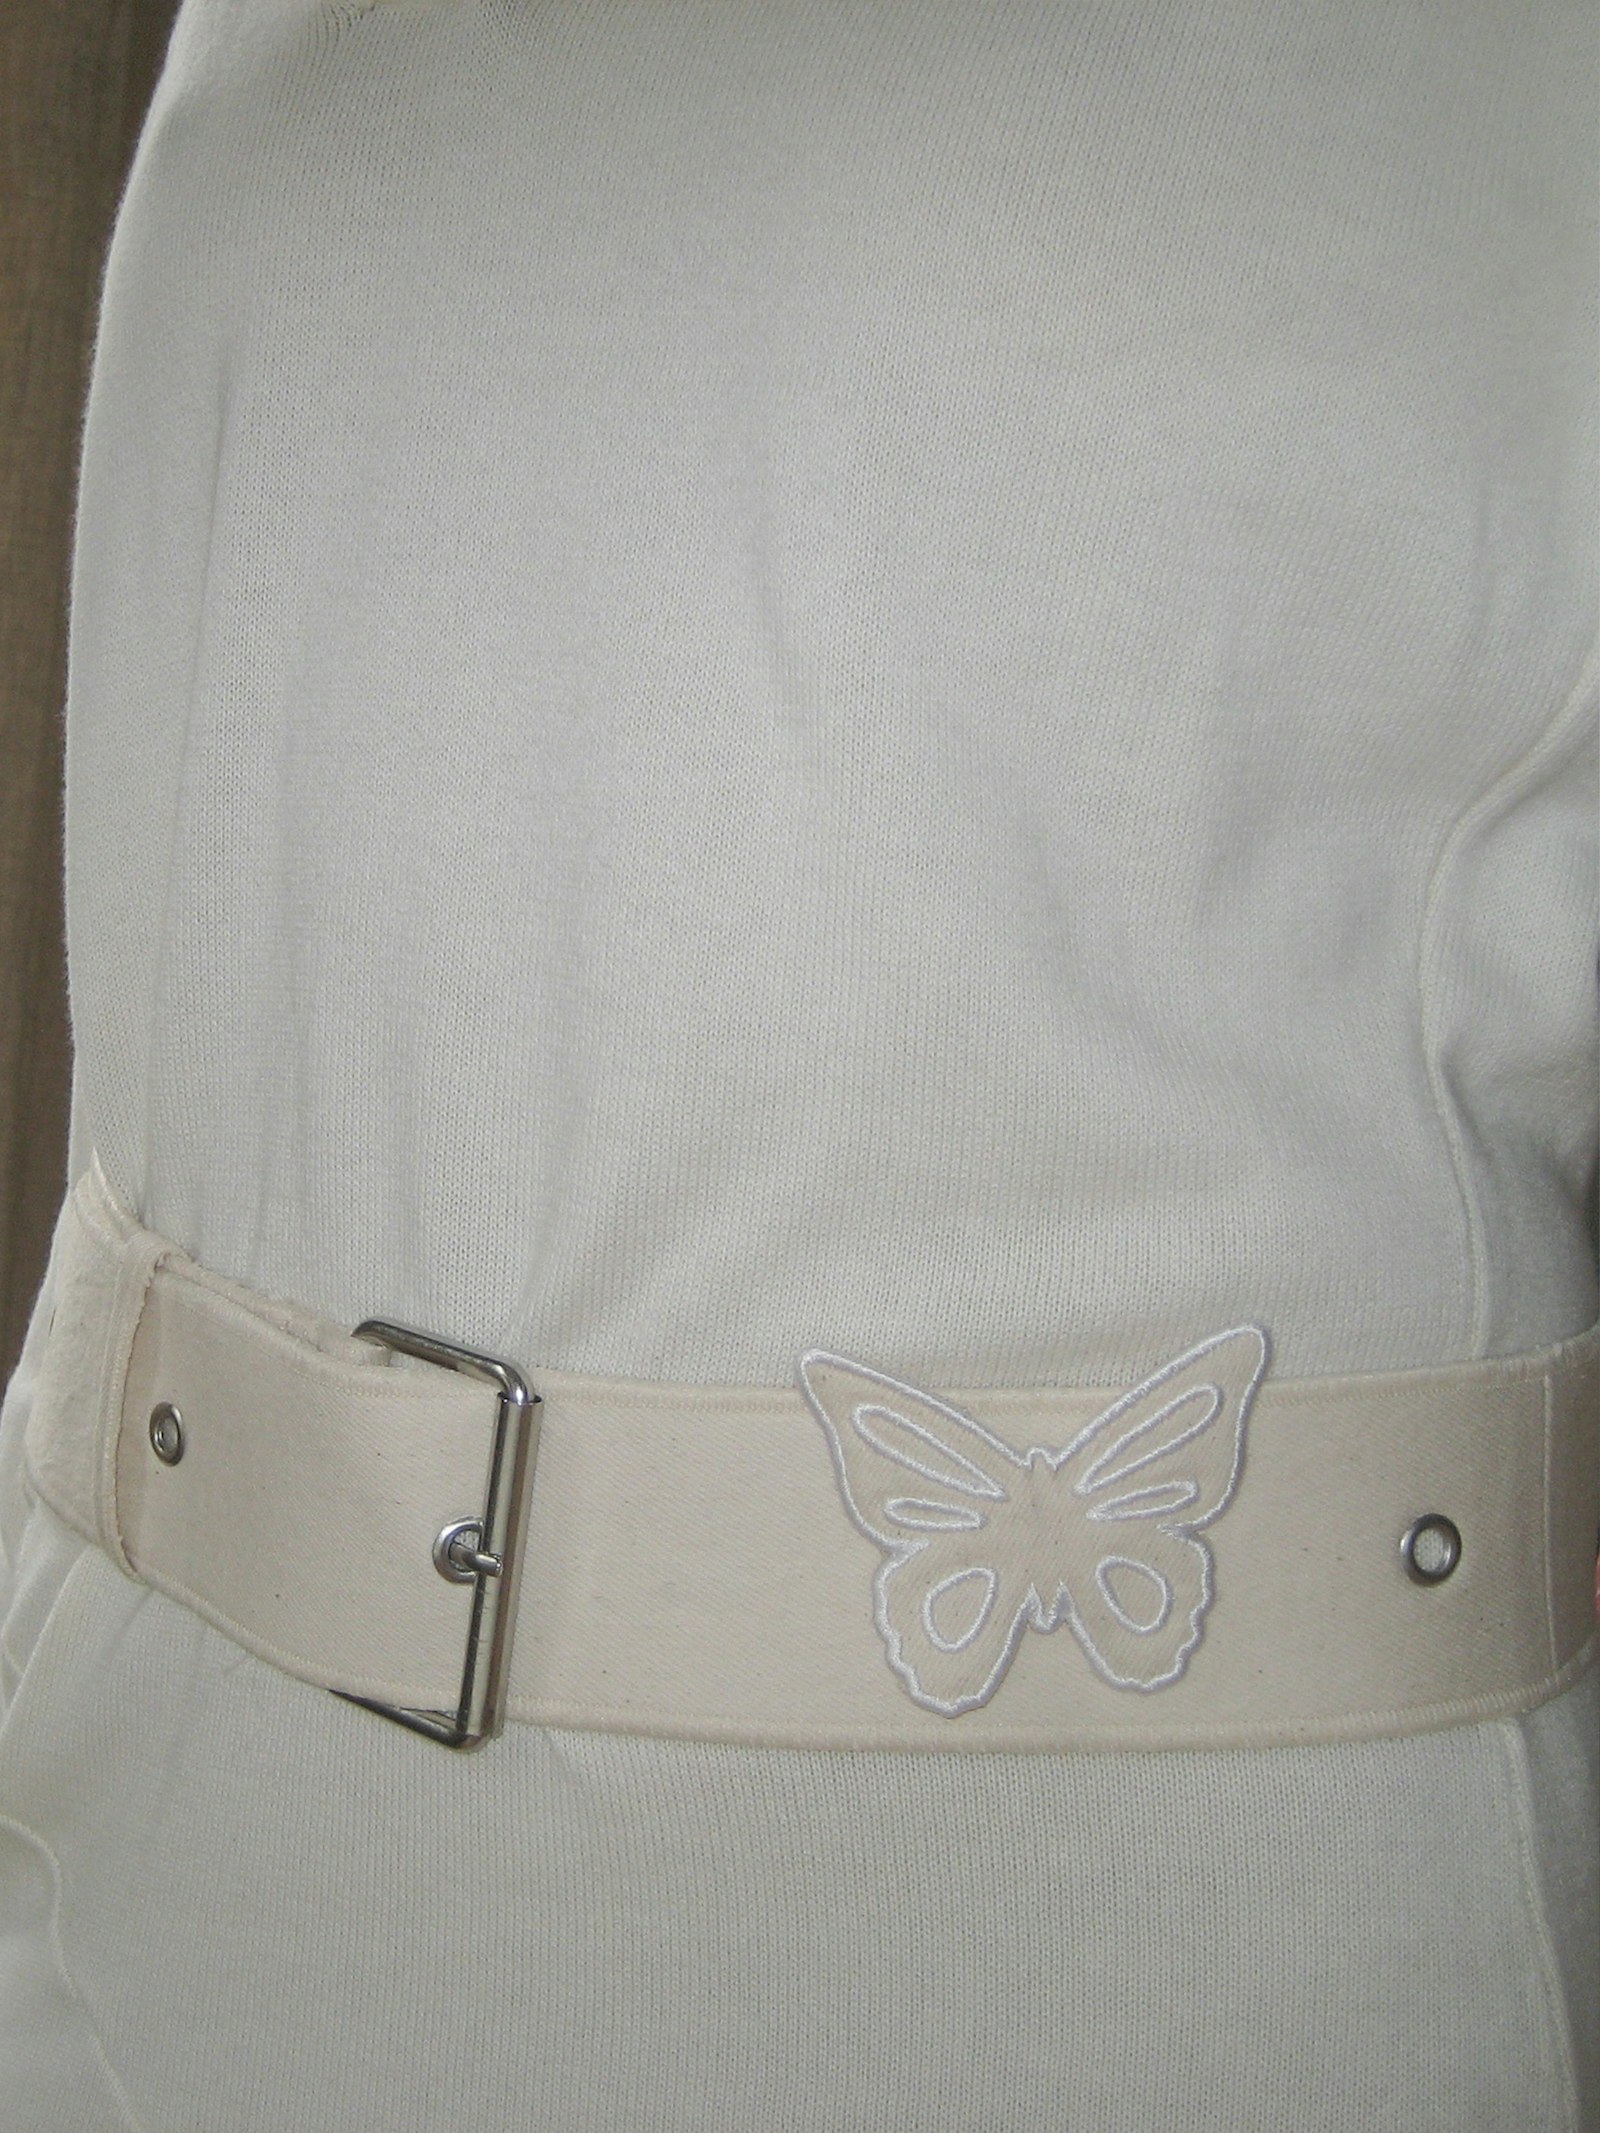 Remake Denim Butterfly Belt Cream